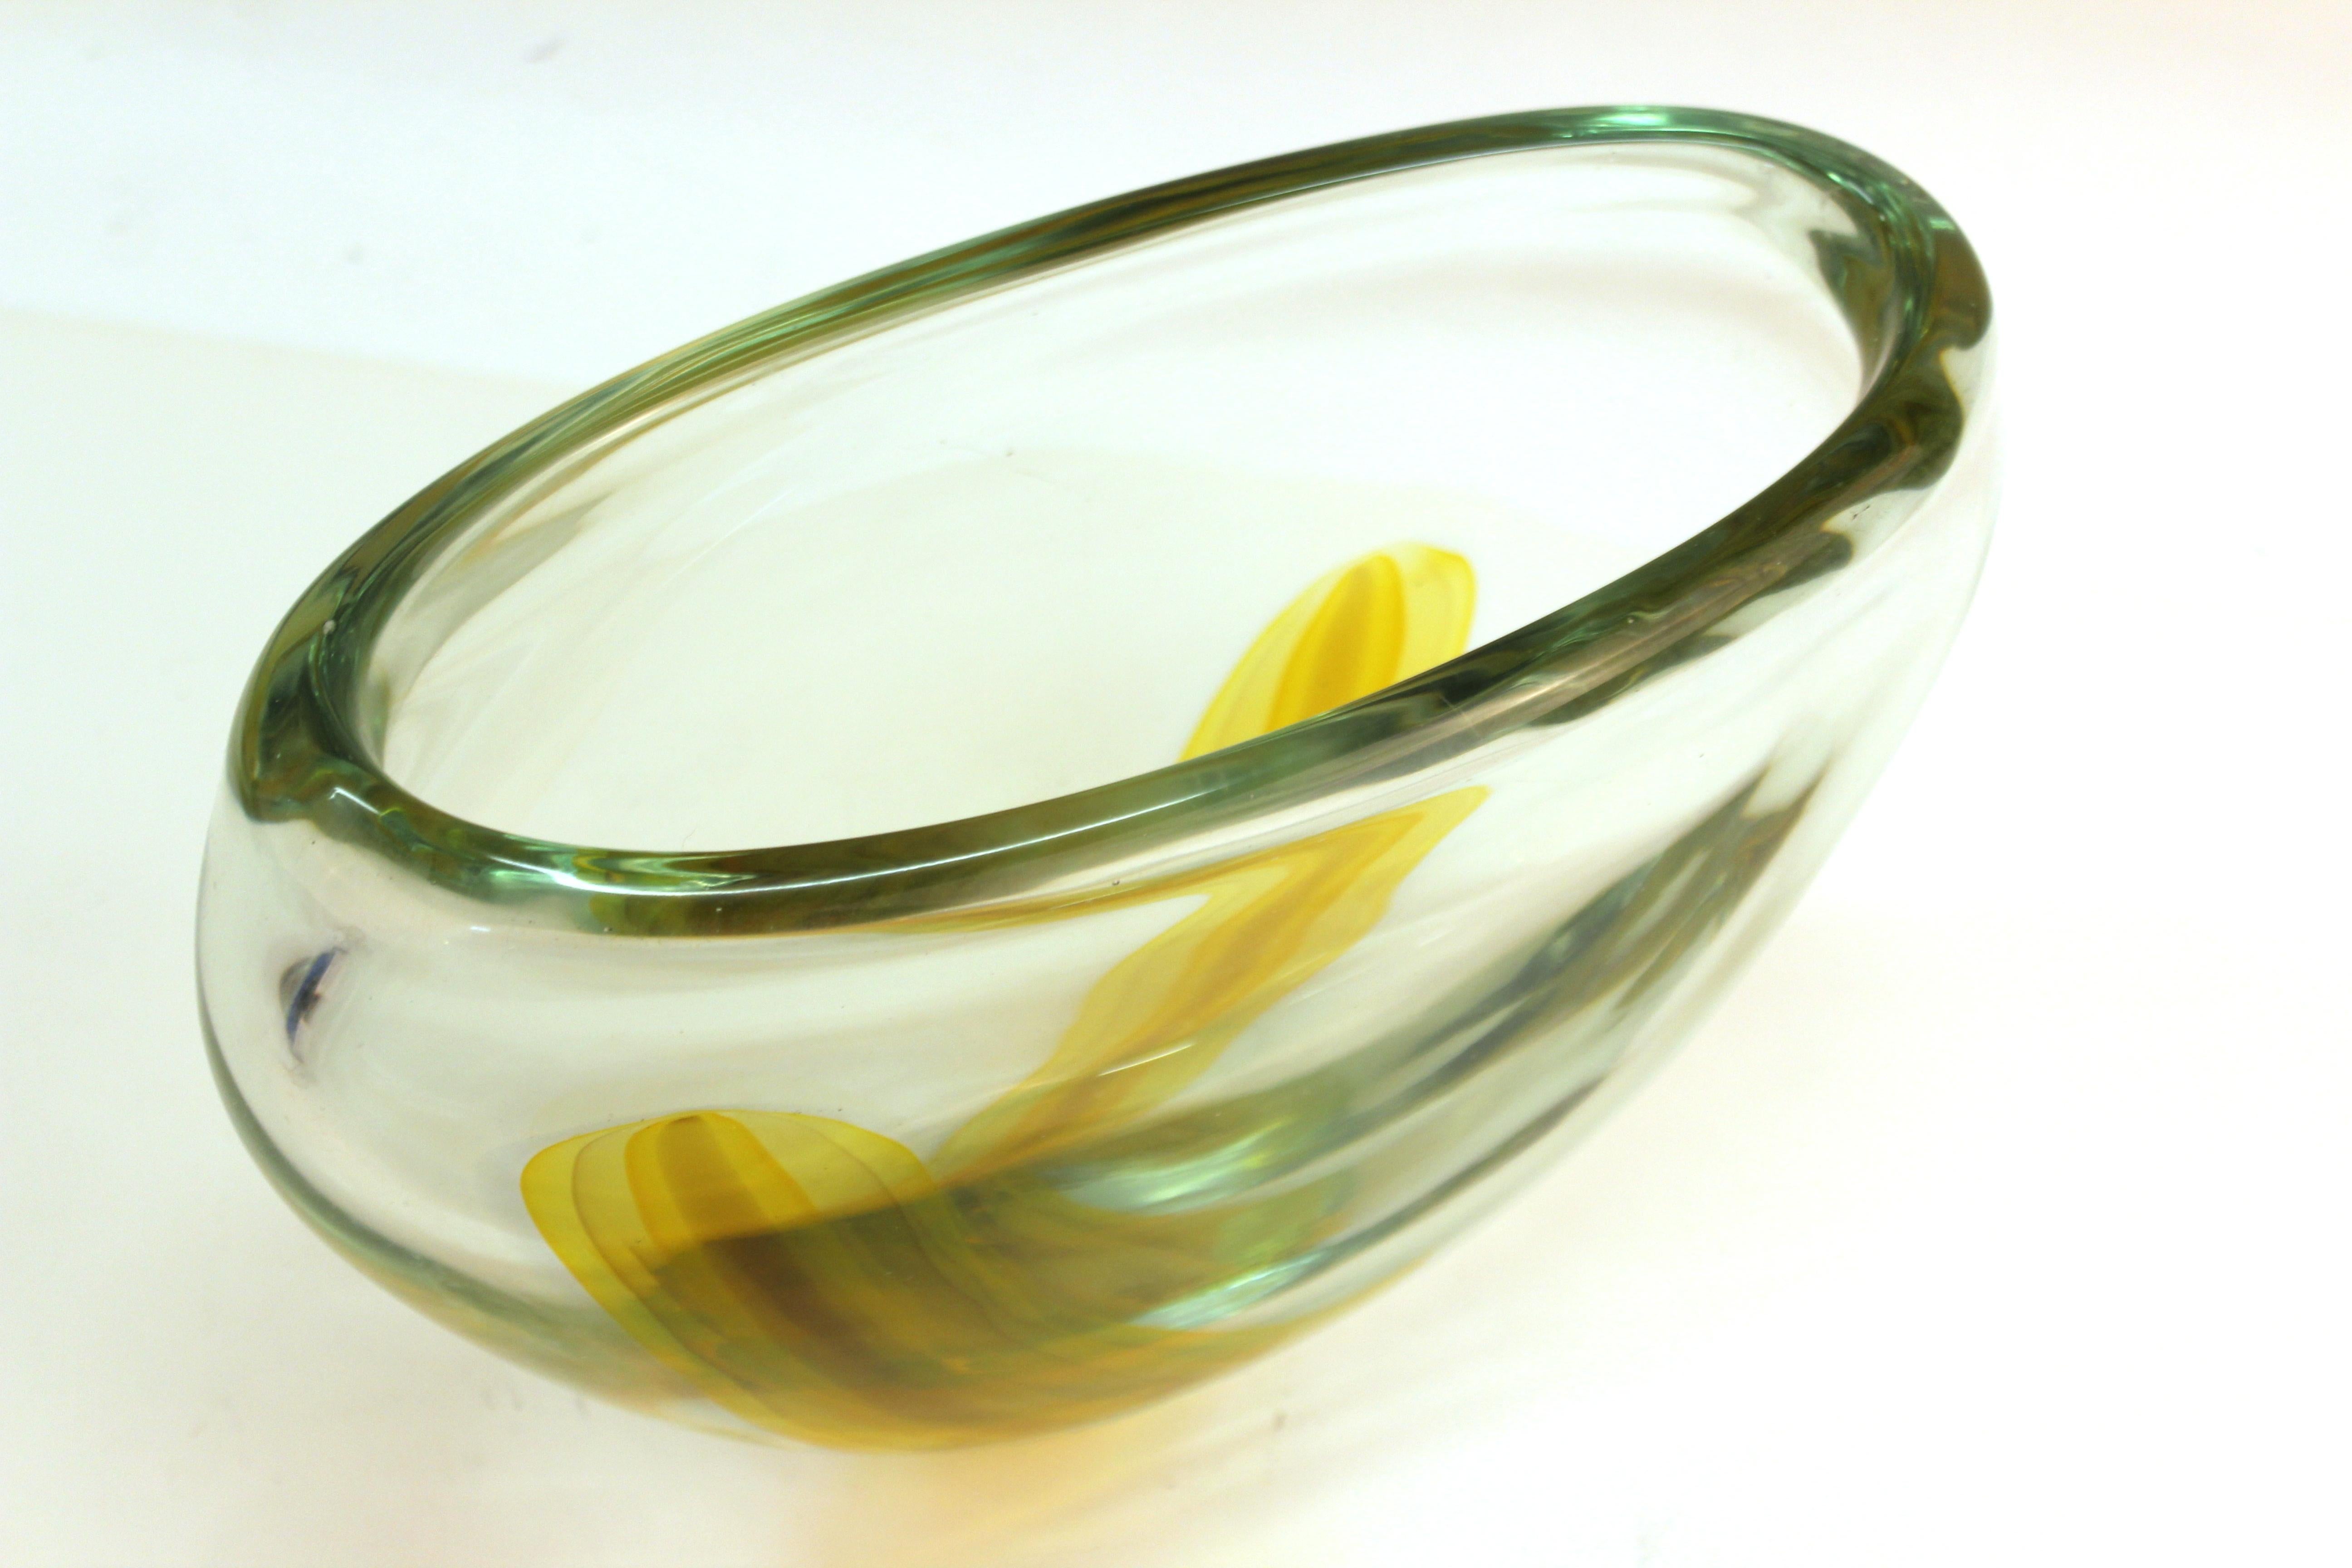 Italian Modern Murano Art Glass Vase with Yellow Strip 2